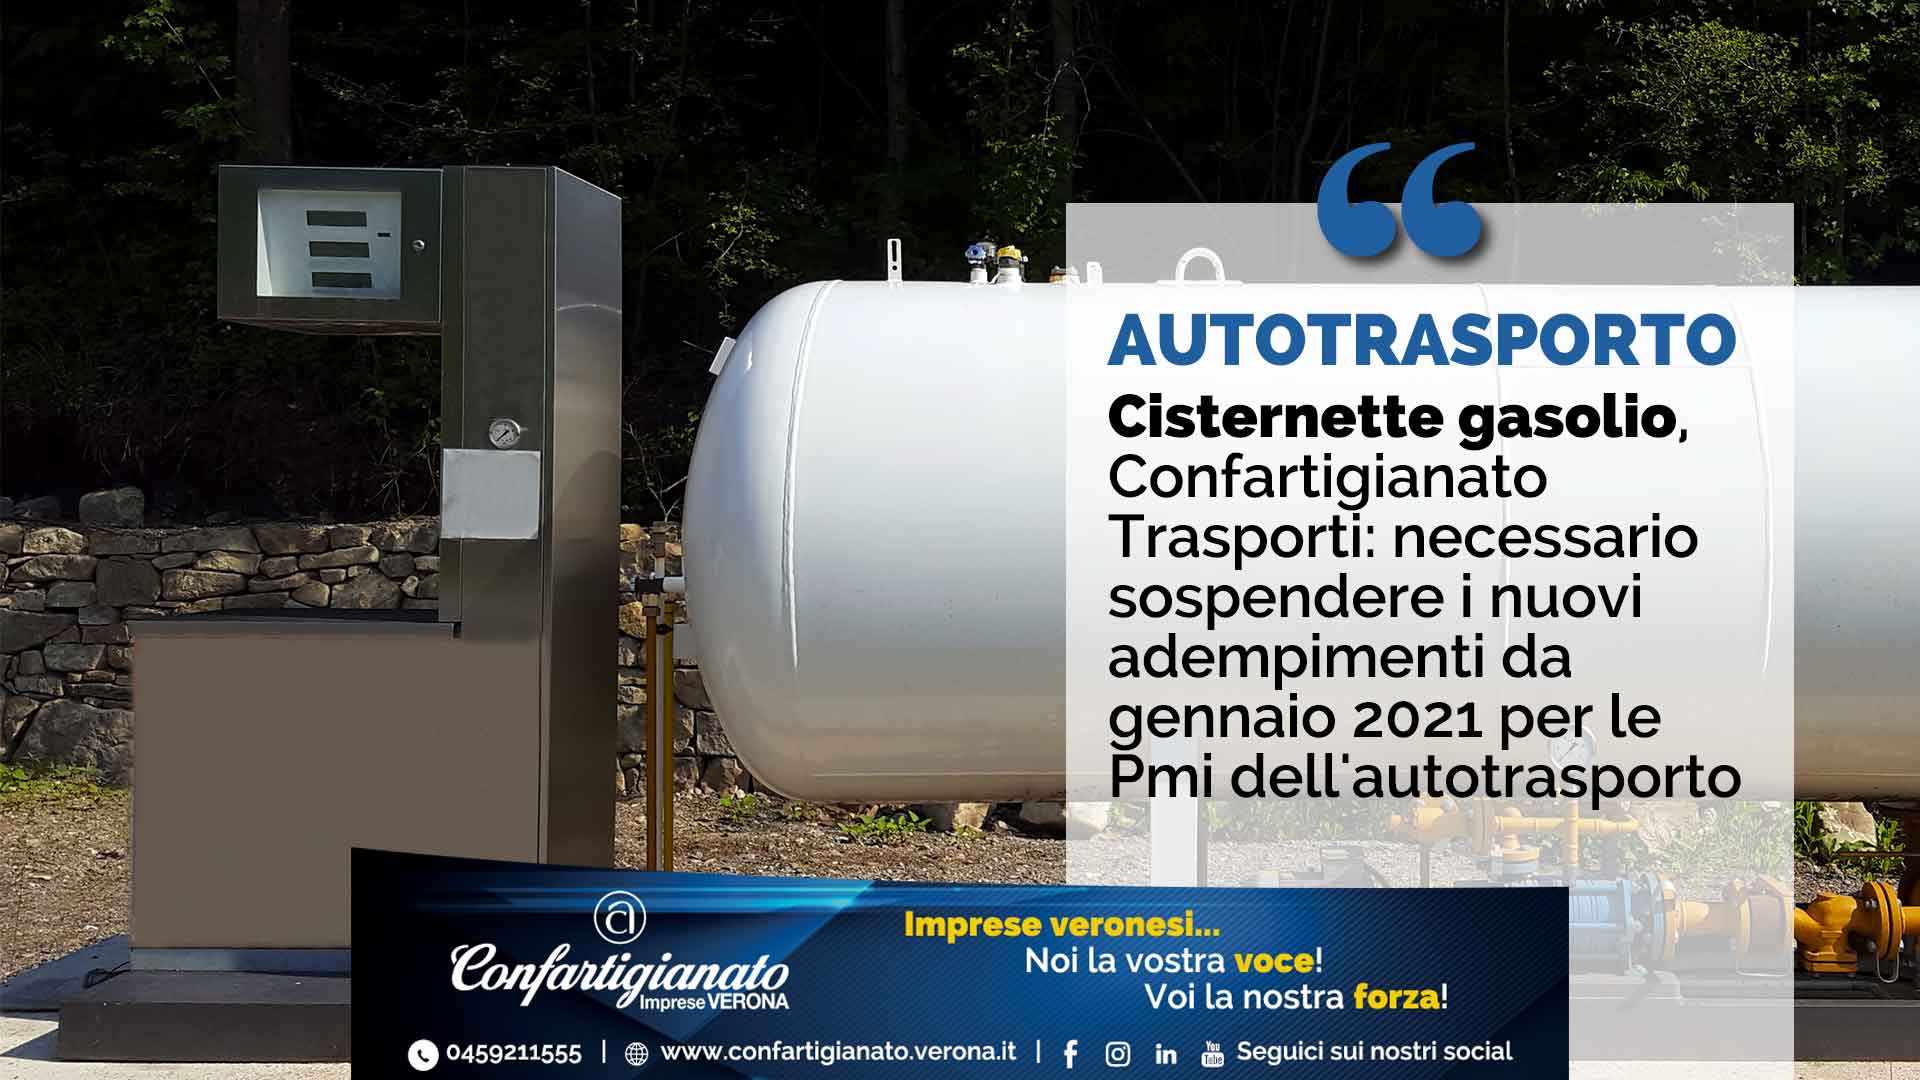 TRASPORTI – Cisternette gasolio, Confartigianato Trasporti: necessario sospendere i nuovi adempimenti da gennaio 2021 per le Pmi dell'autotrasporto